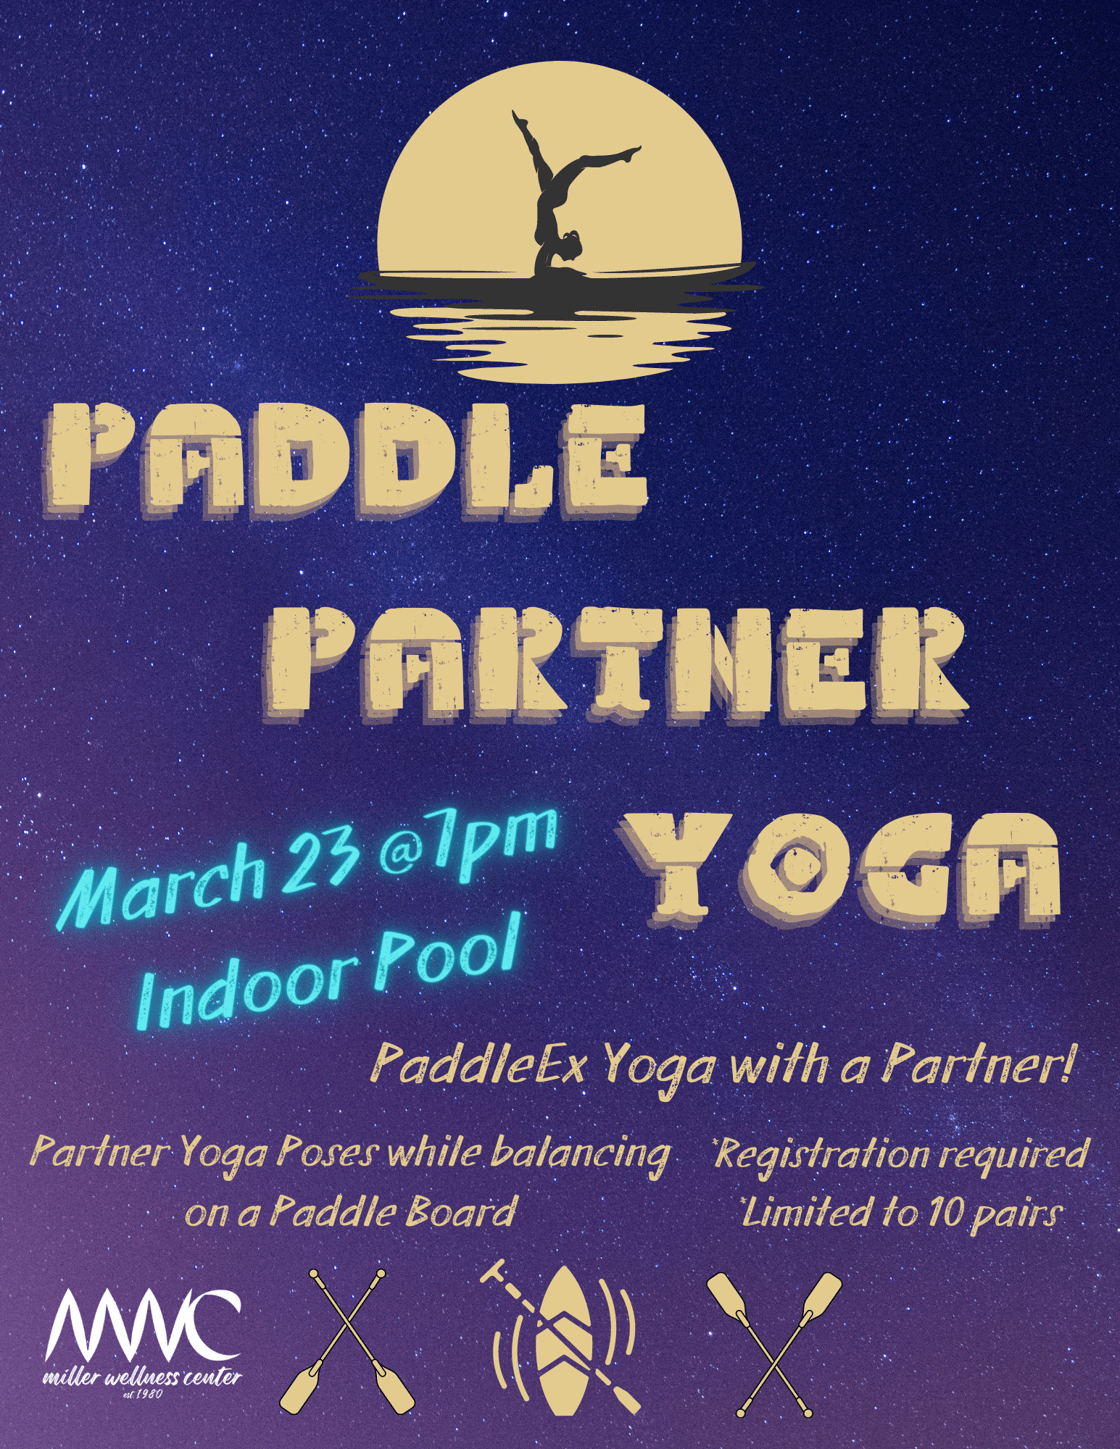 Partner Paddle Yoga